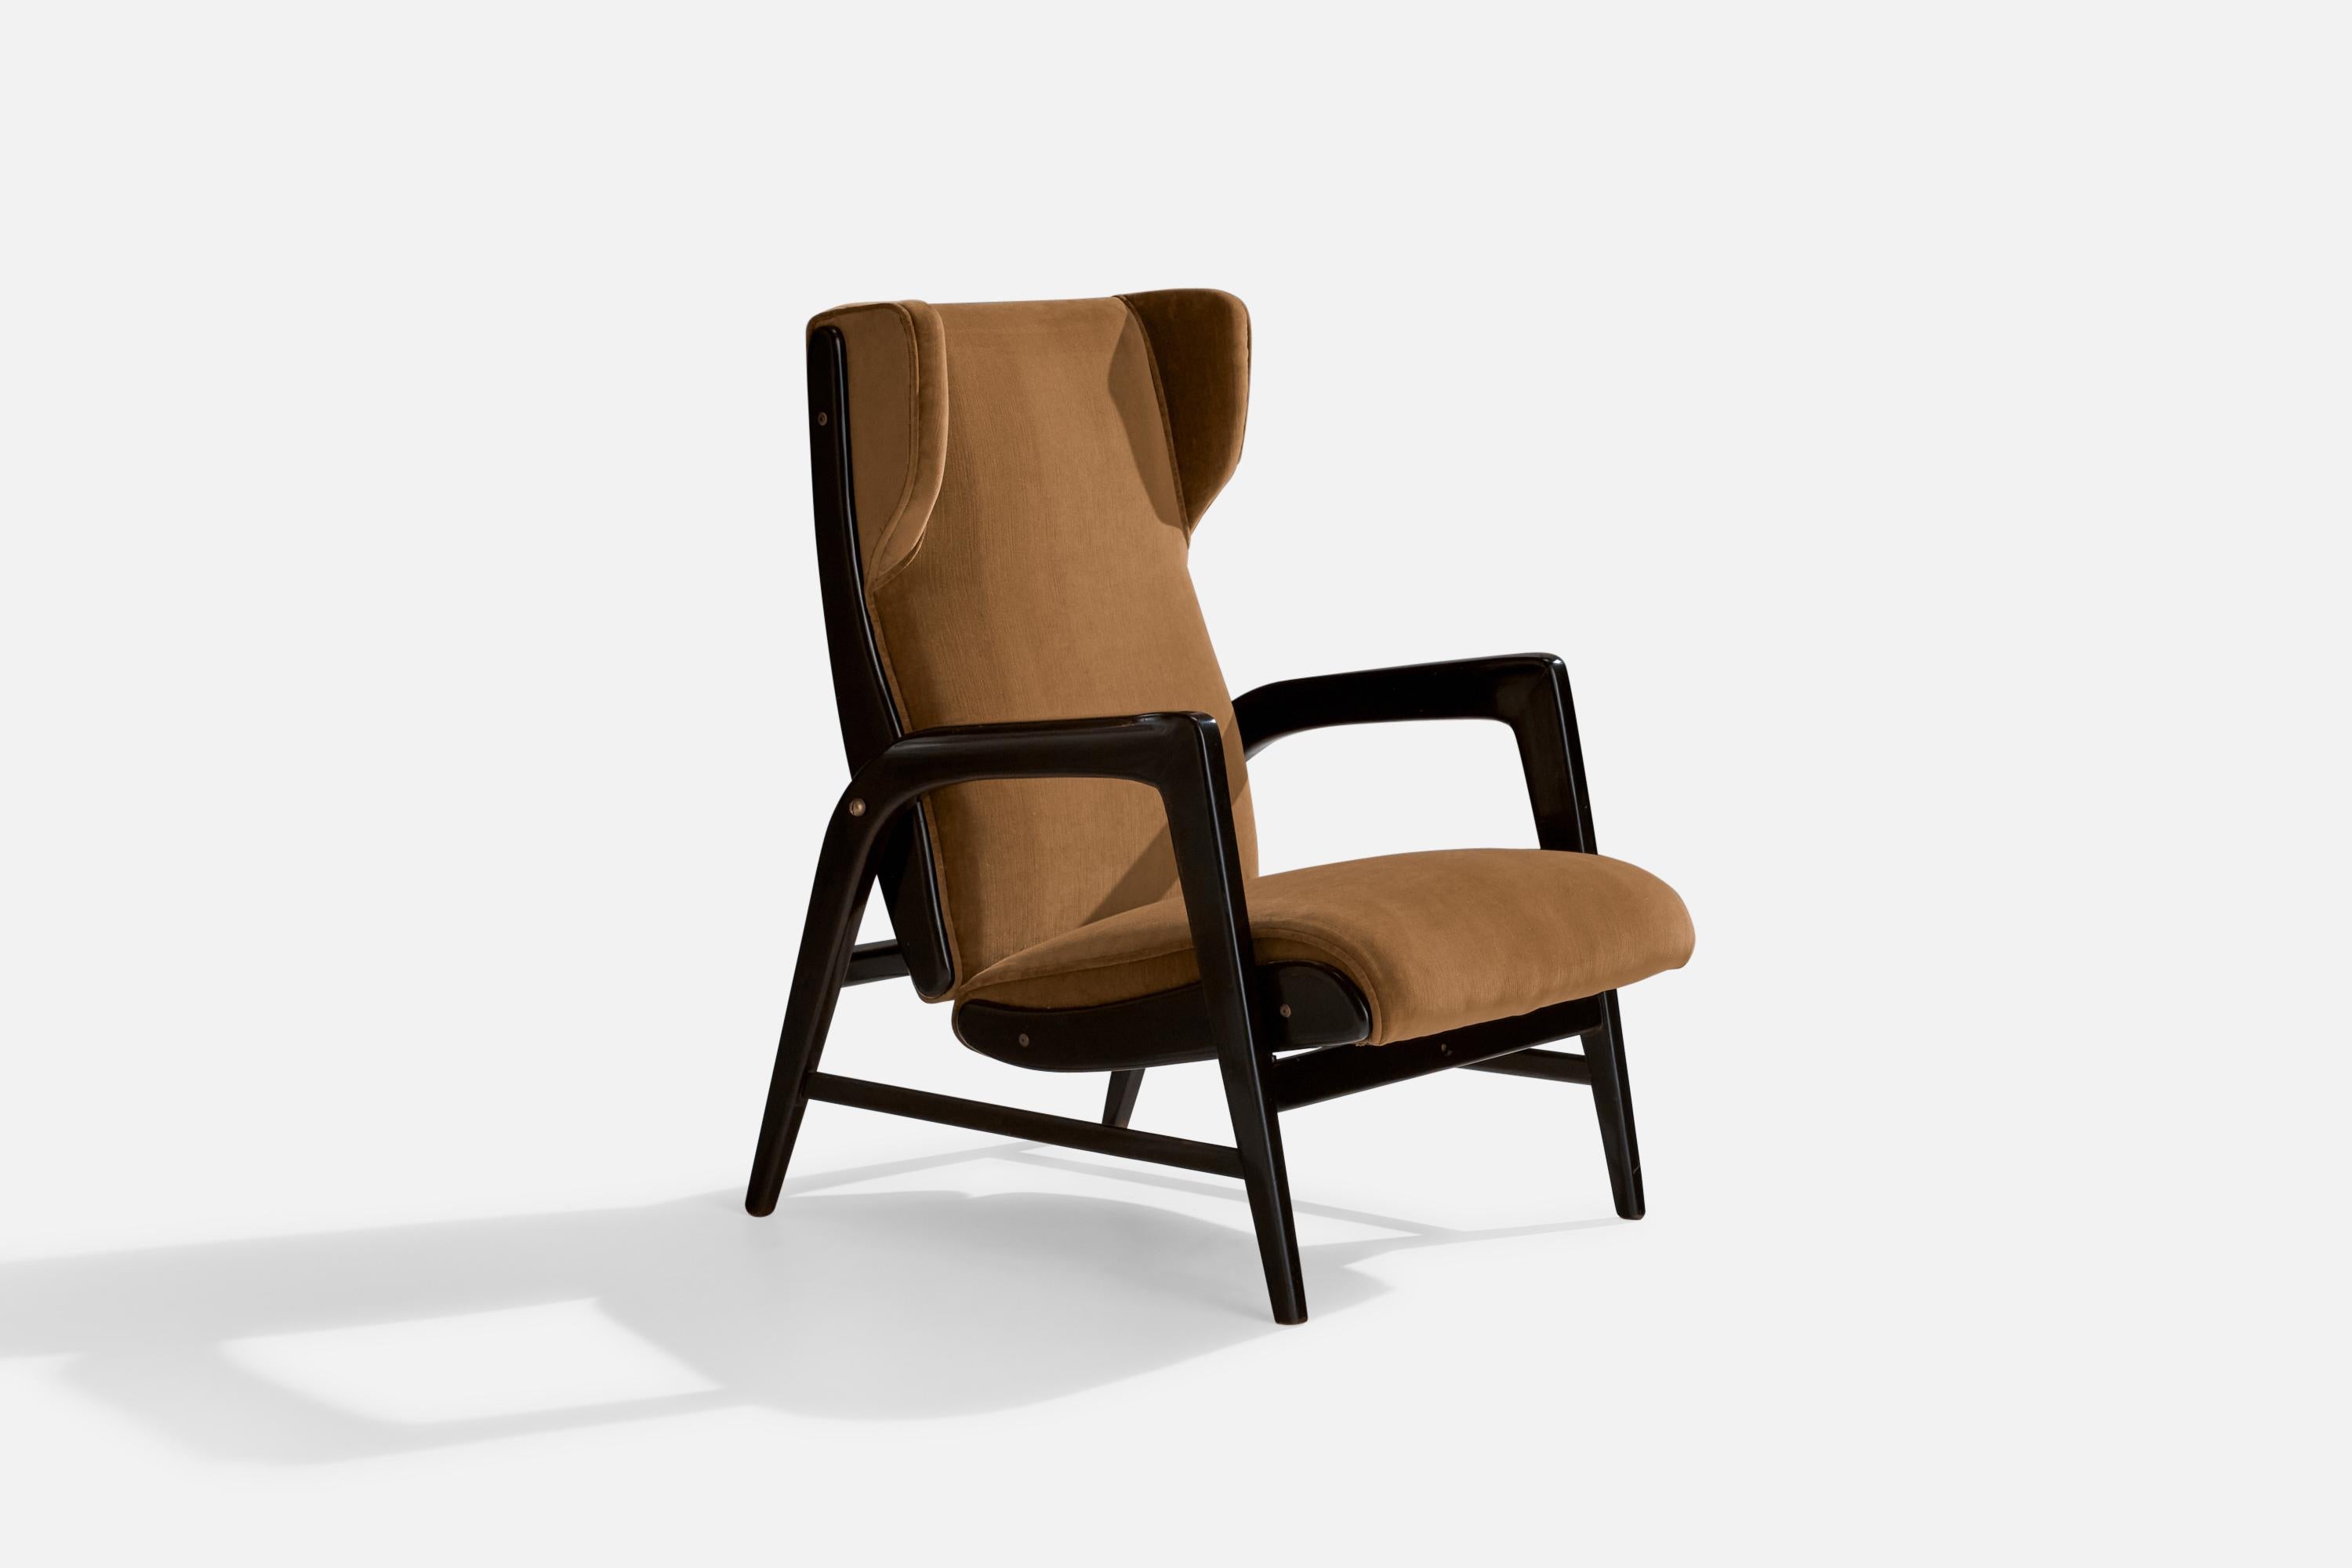 Ein verstellbarer Sessel aus ebonisiertem Holz, Messing und Samt, entworfen von Gio Ponti und hergestellt von Casa e Giardino, Italien, um 1937

Sitzhöhe 16